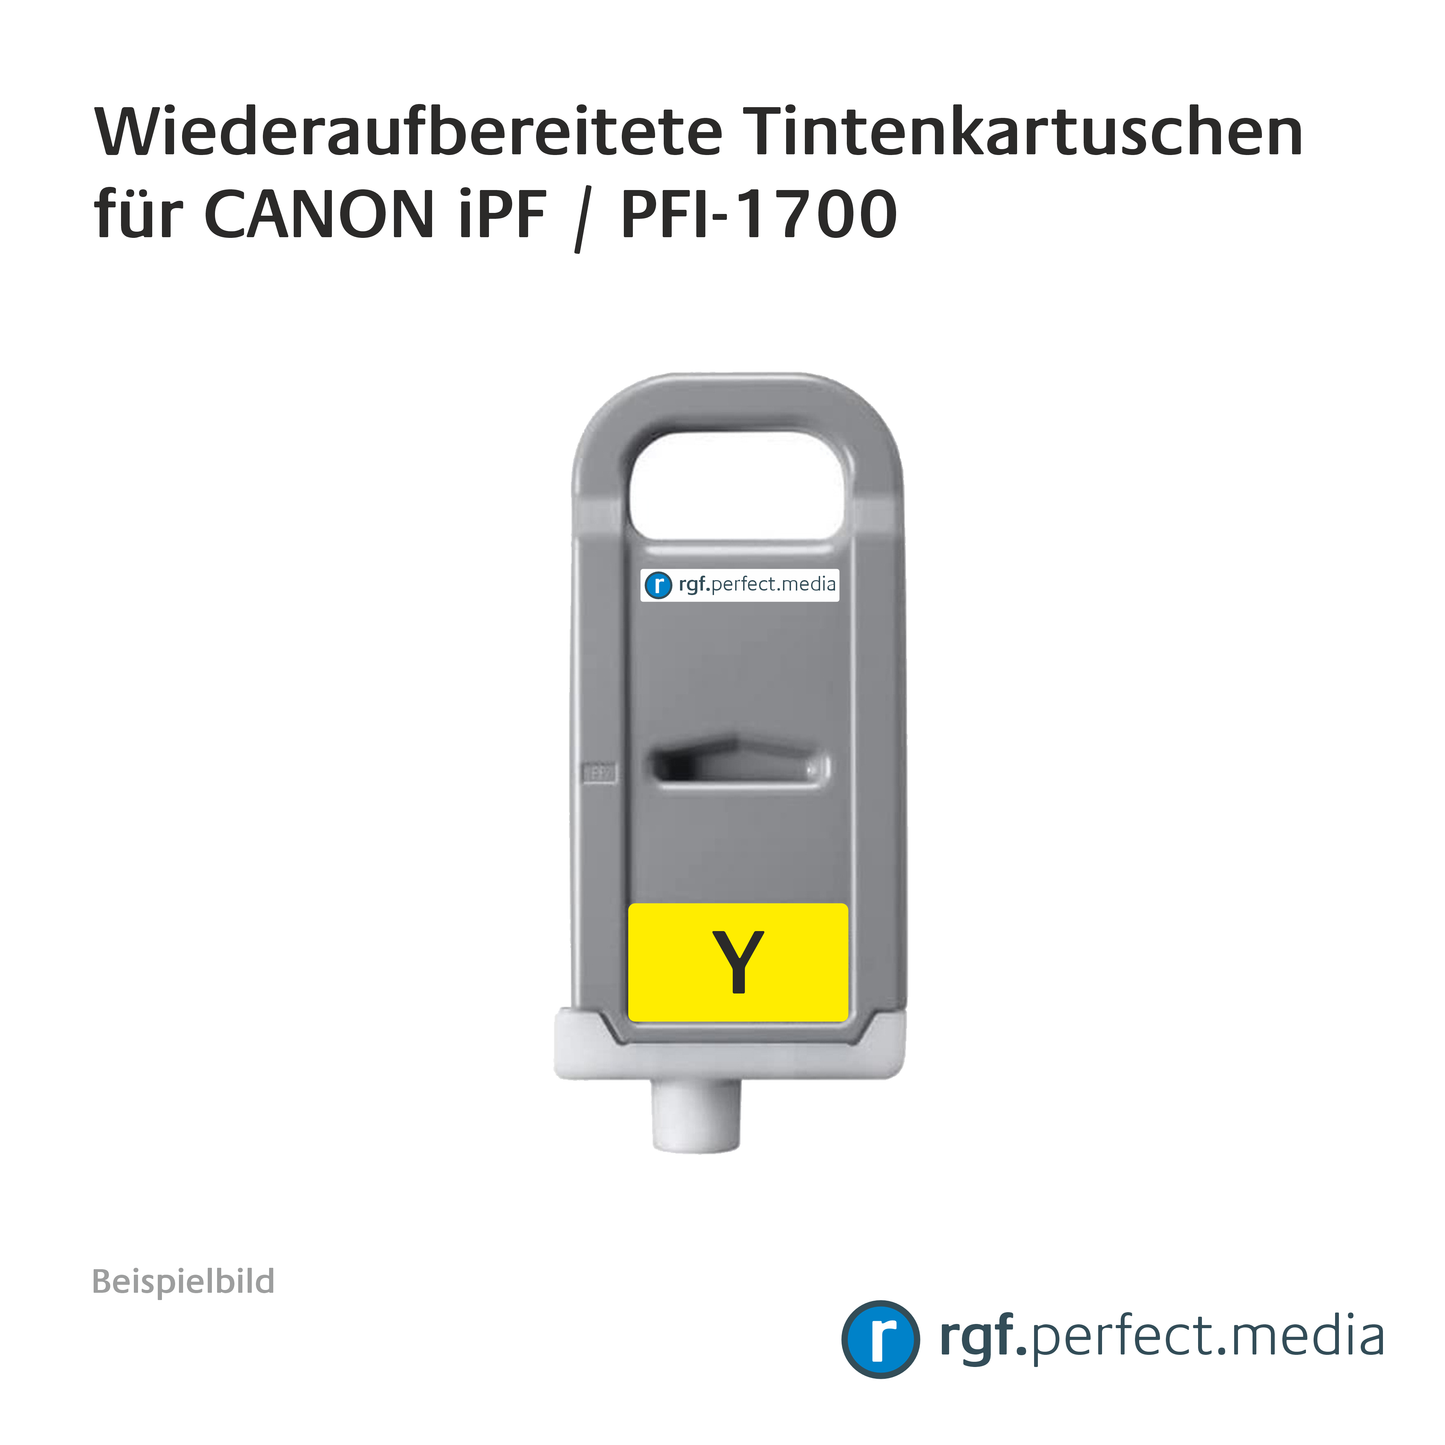 Wiederaufbereitete Tintenkartuschen No.1700 Serie kompatibel für Canon iPF - Serie